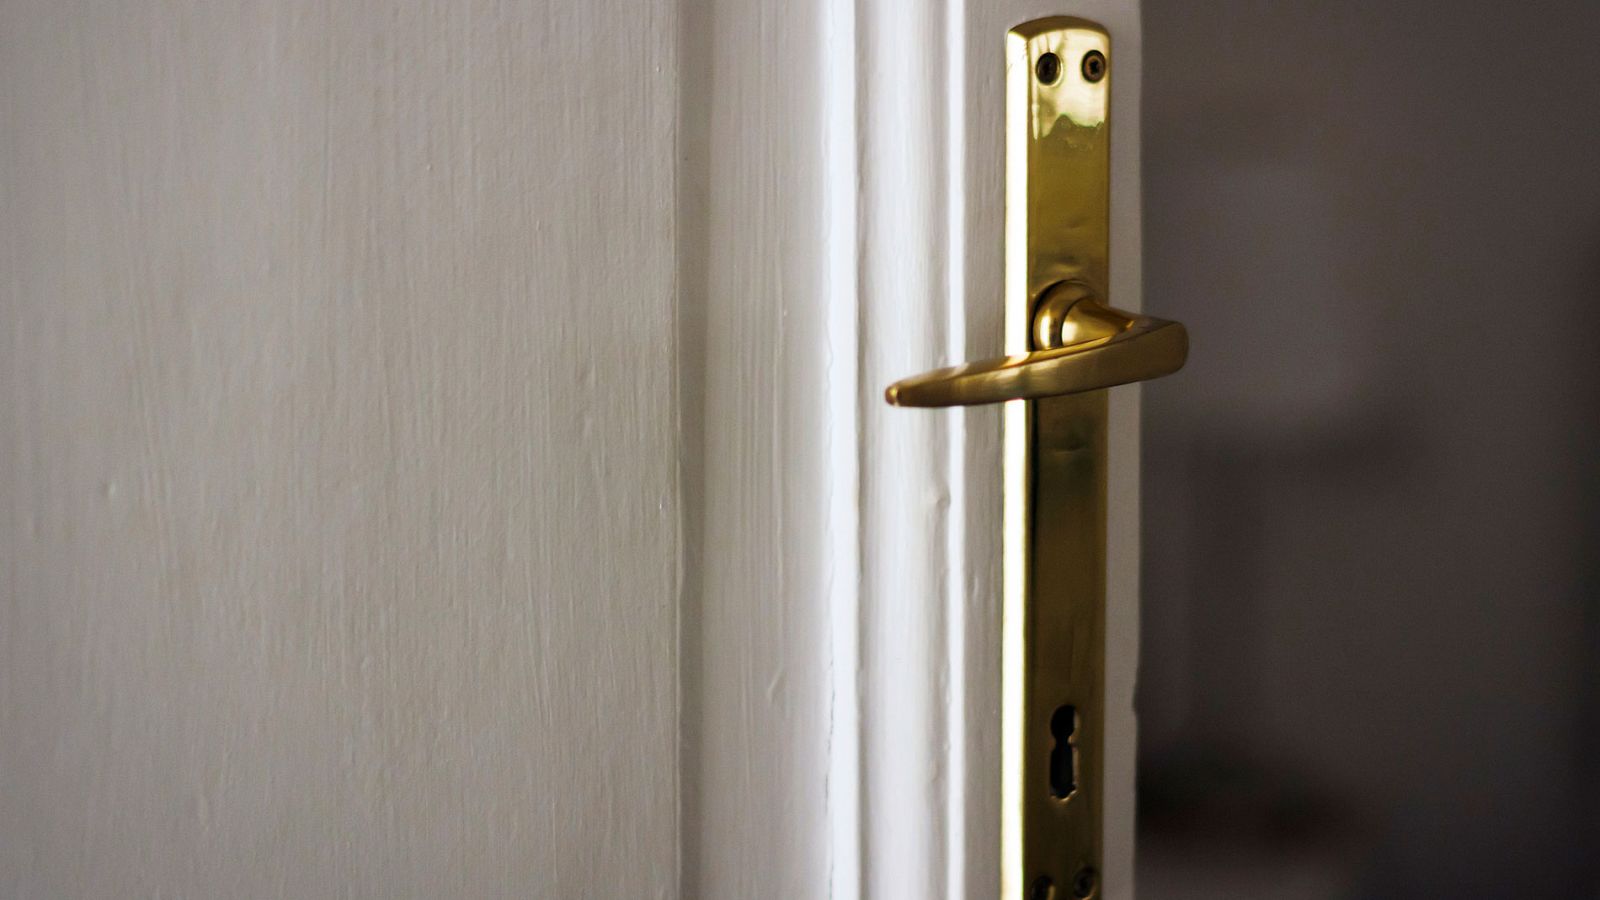 Códigos en las puertas de las viviendas, el nuevo 'modus operandi' de los ladrones